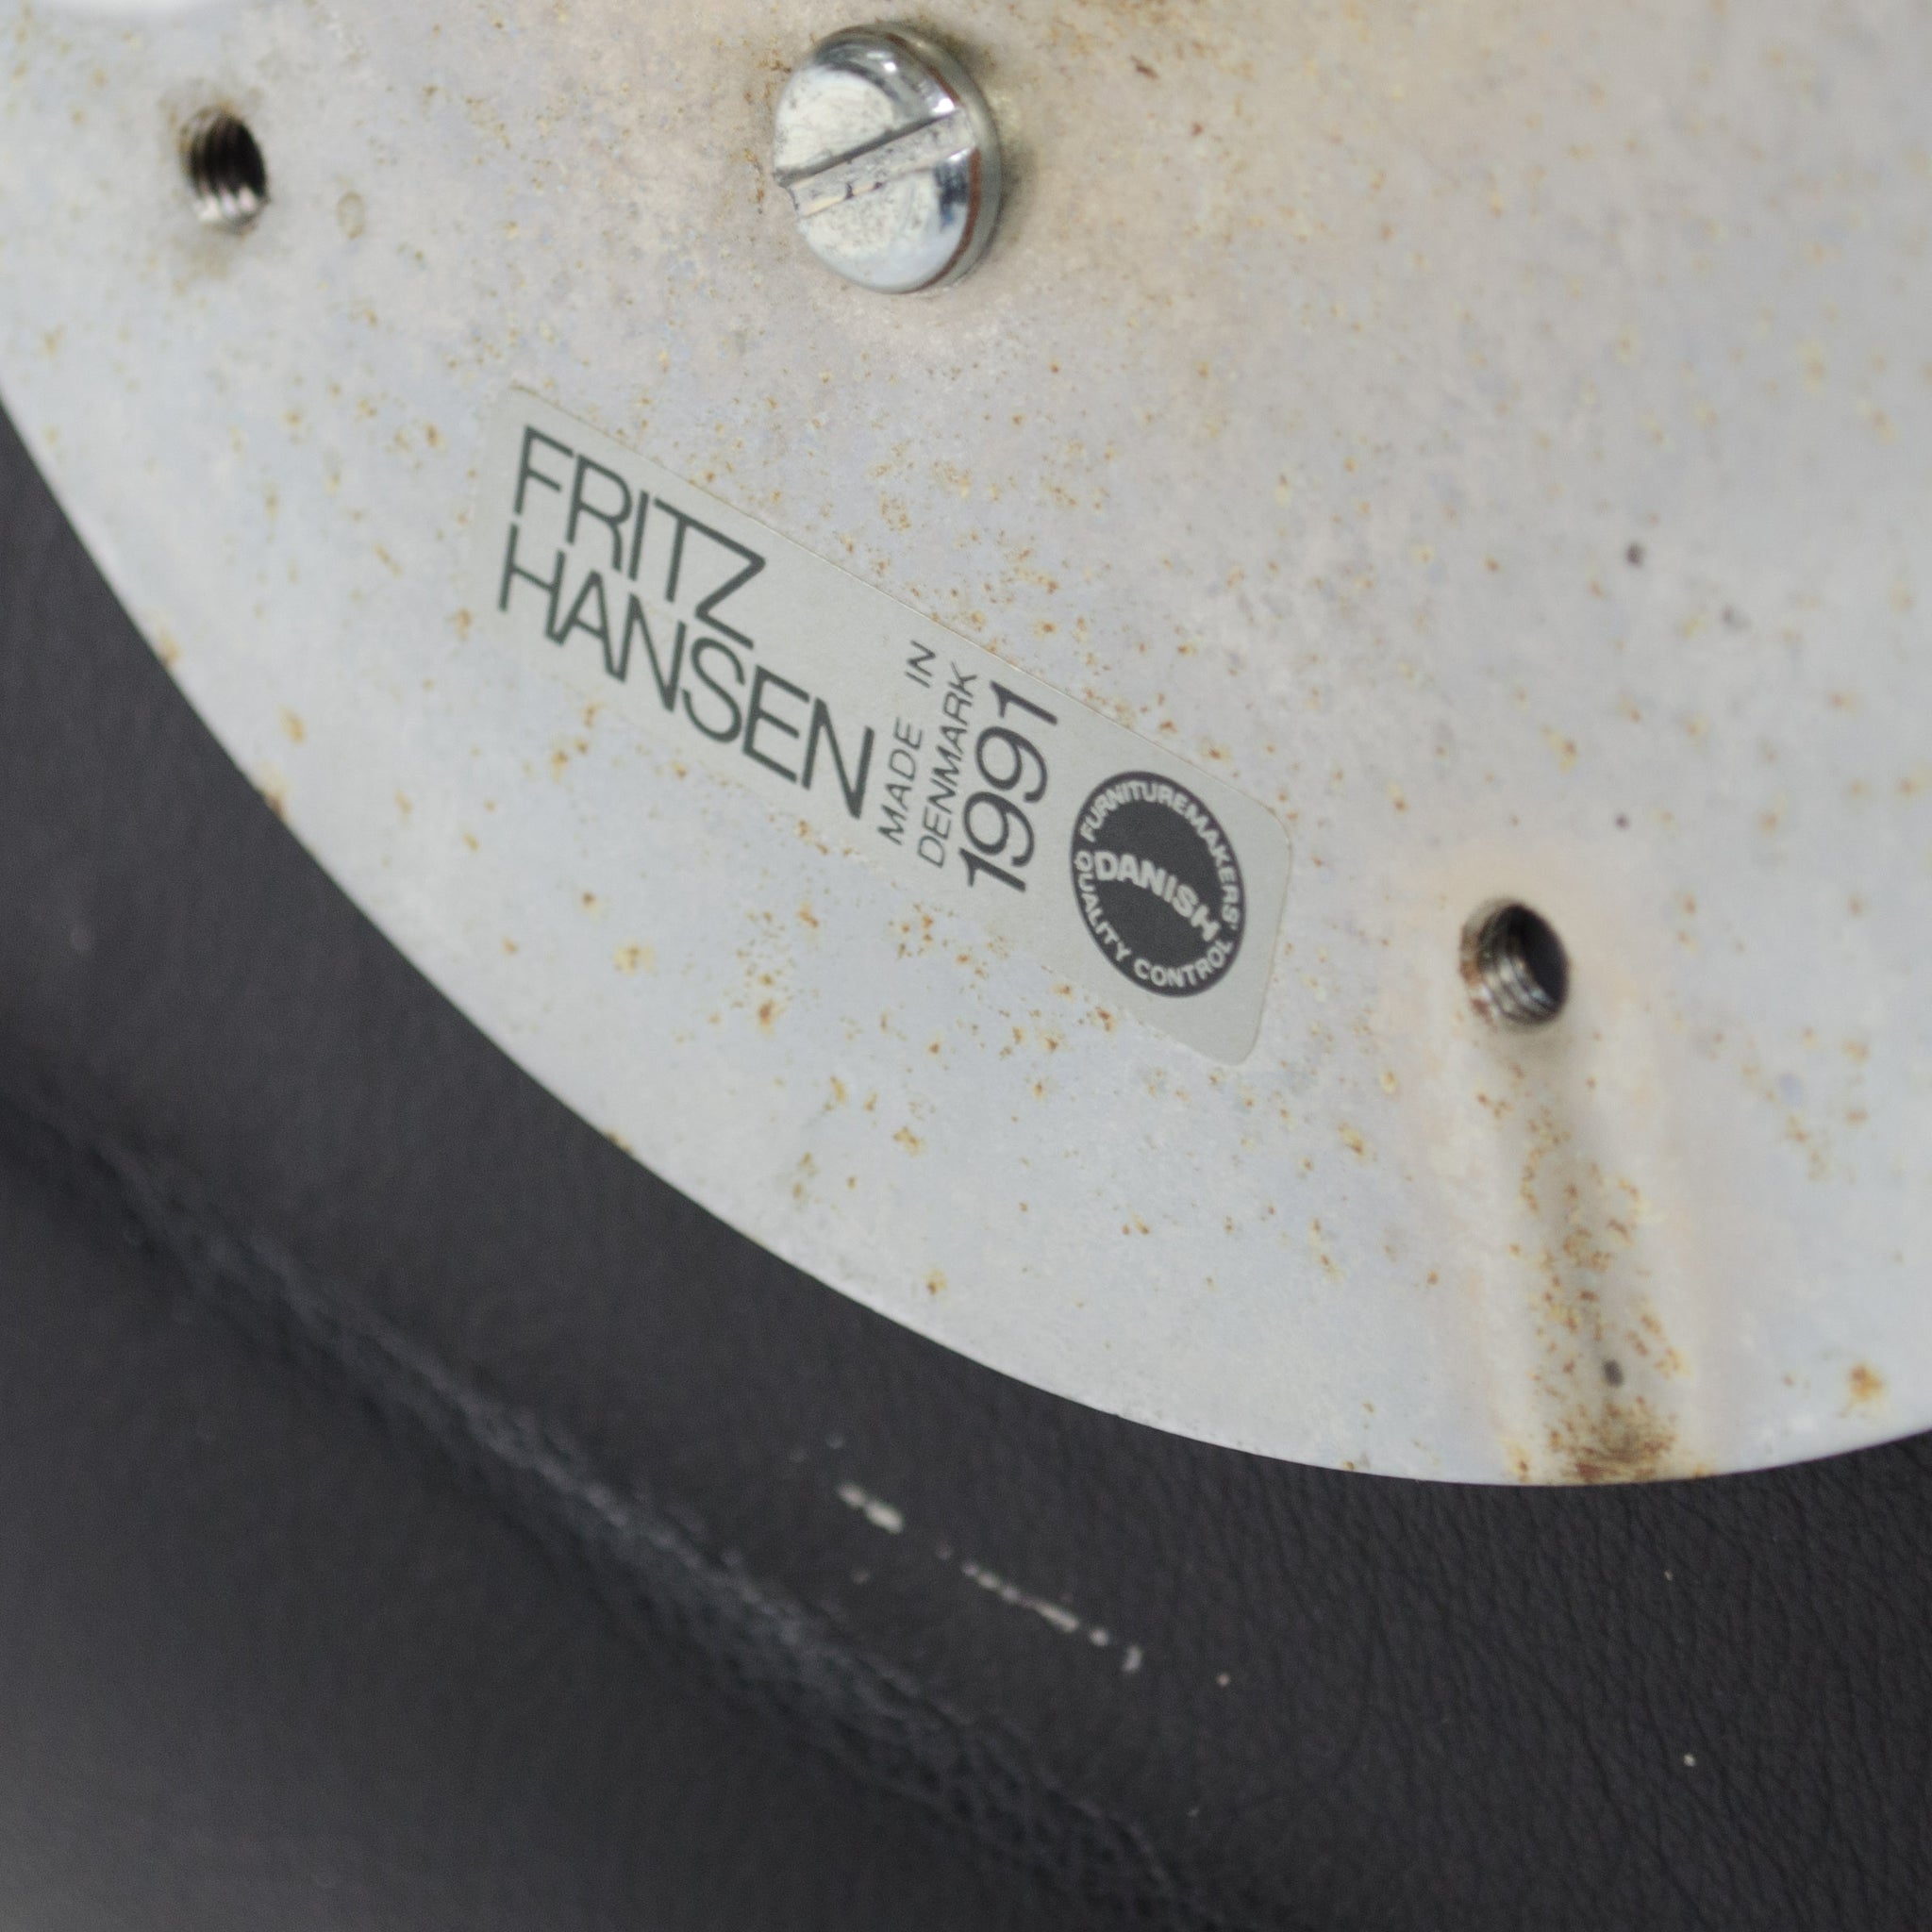 SOLD Arne Jacobsen 3117 for Fritz Hansen Denmark Rolling Desk Chair